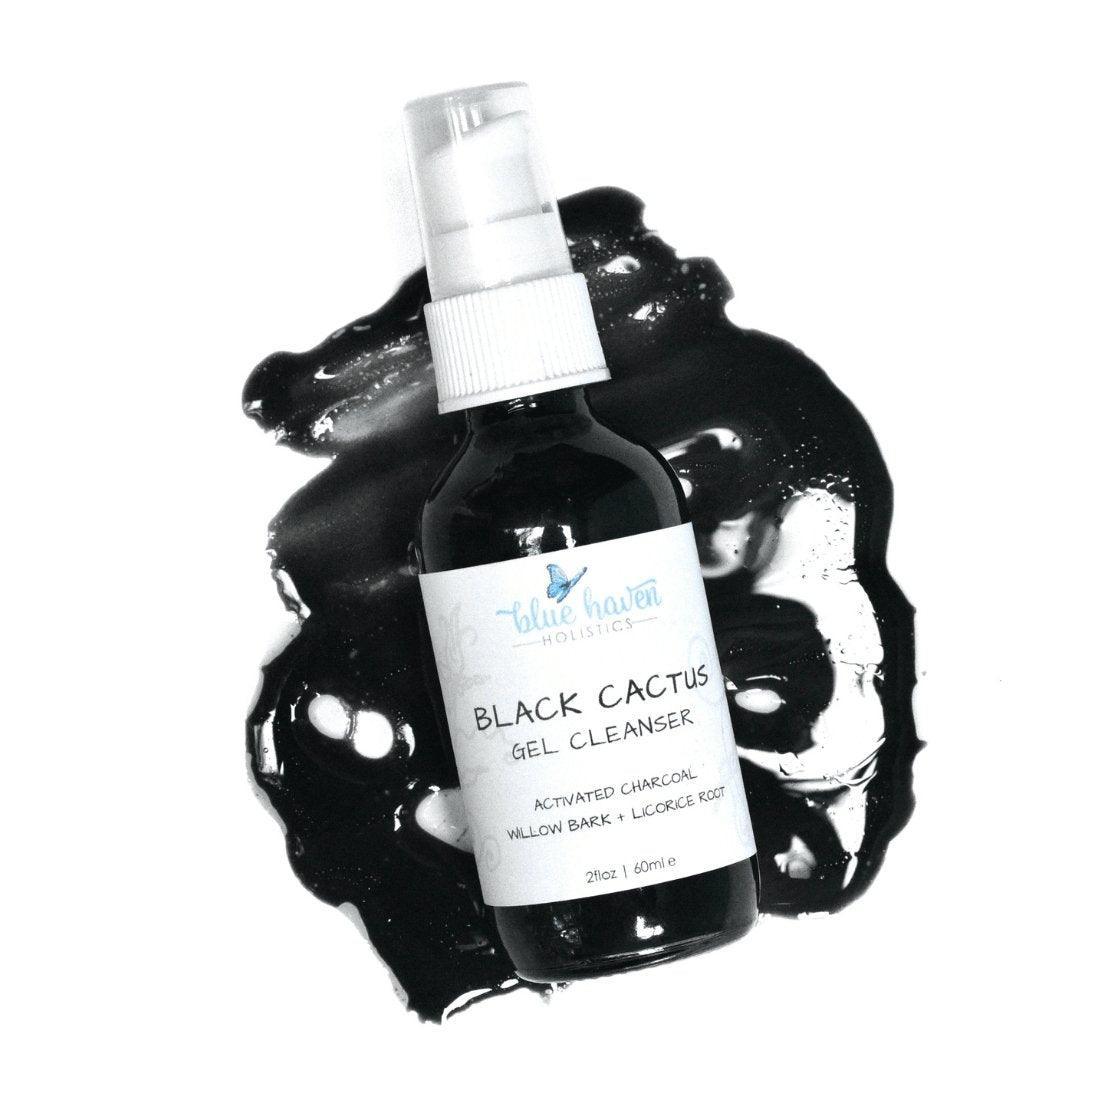 Black Cactus Charcoal Gel Face Cleanser - Blue Haven Holistics